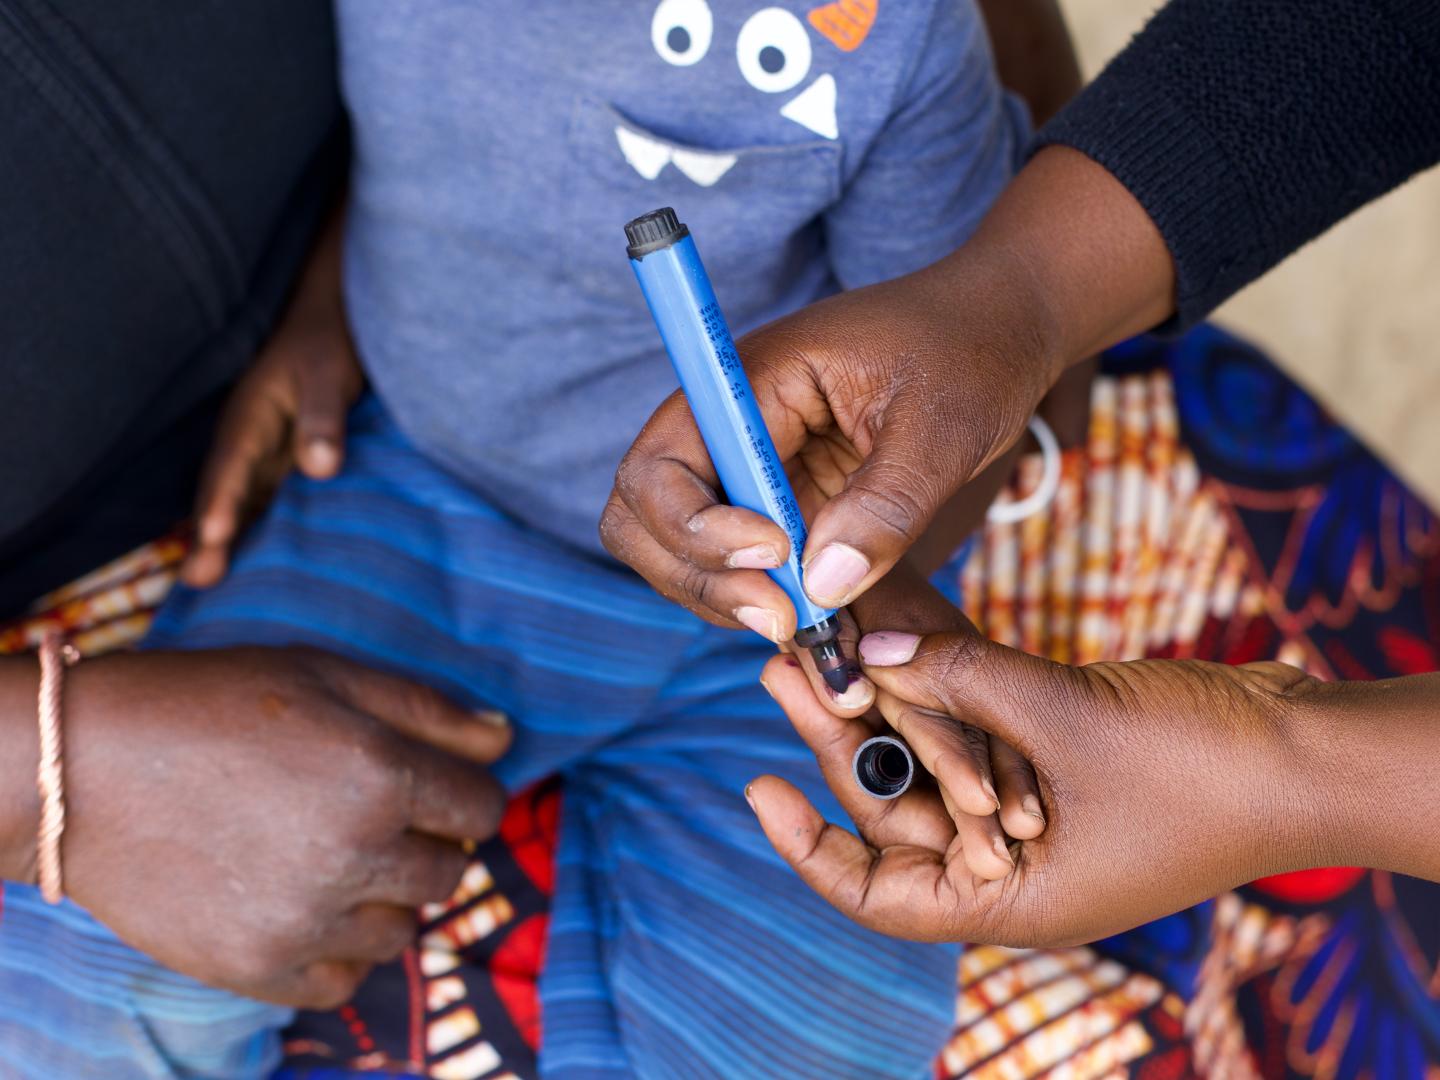 Les dirigeants du secteur de la santé s’engagent à renforcer la riposte au moment où l’Afrique célèbre une année sans cas de poliovirus sauvage détecté